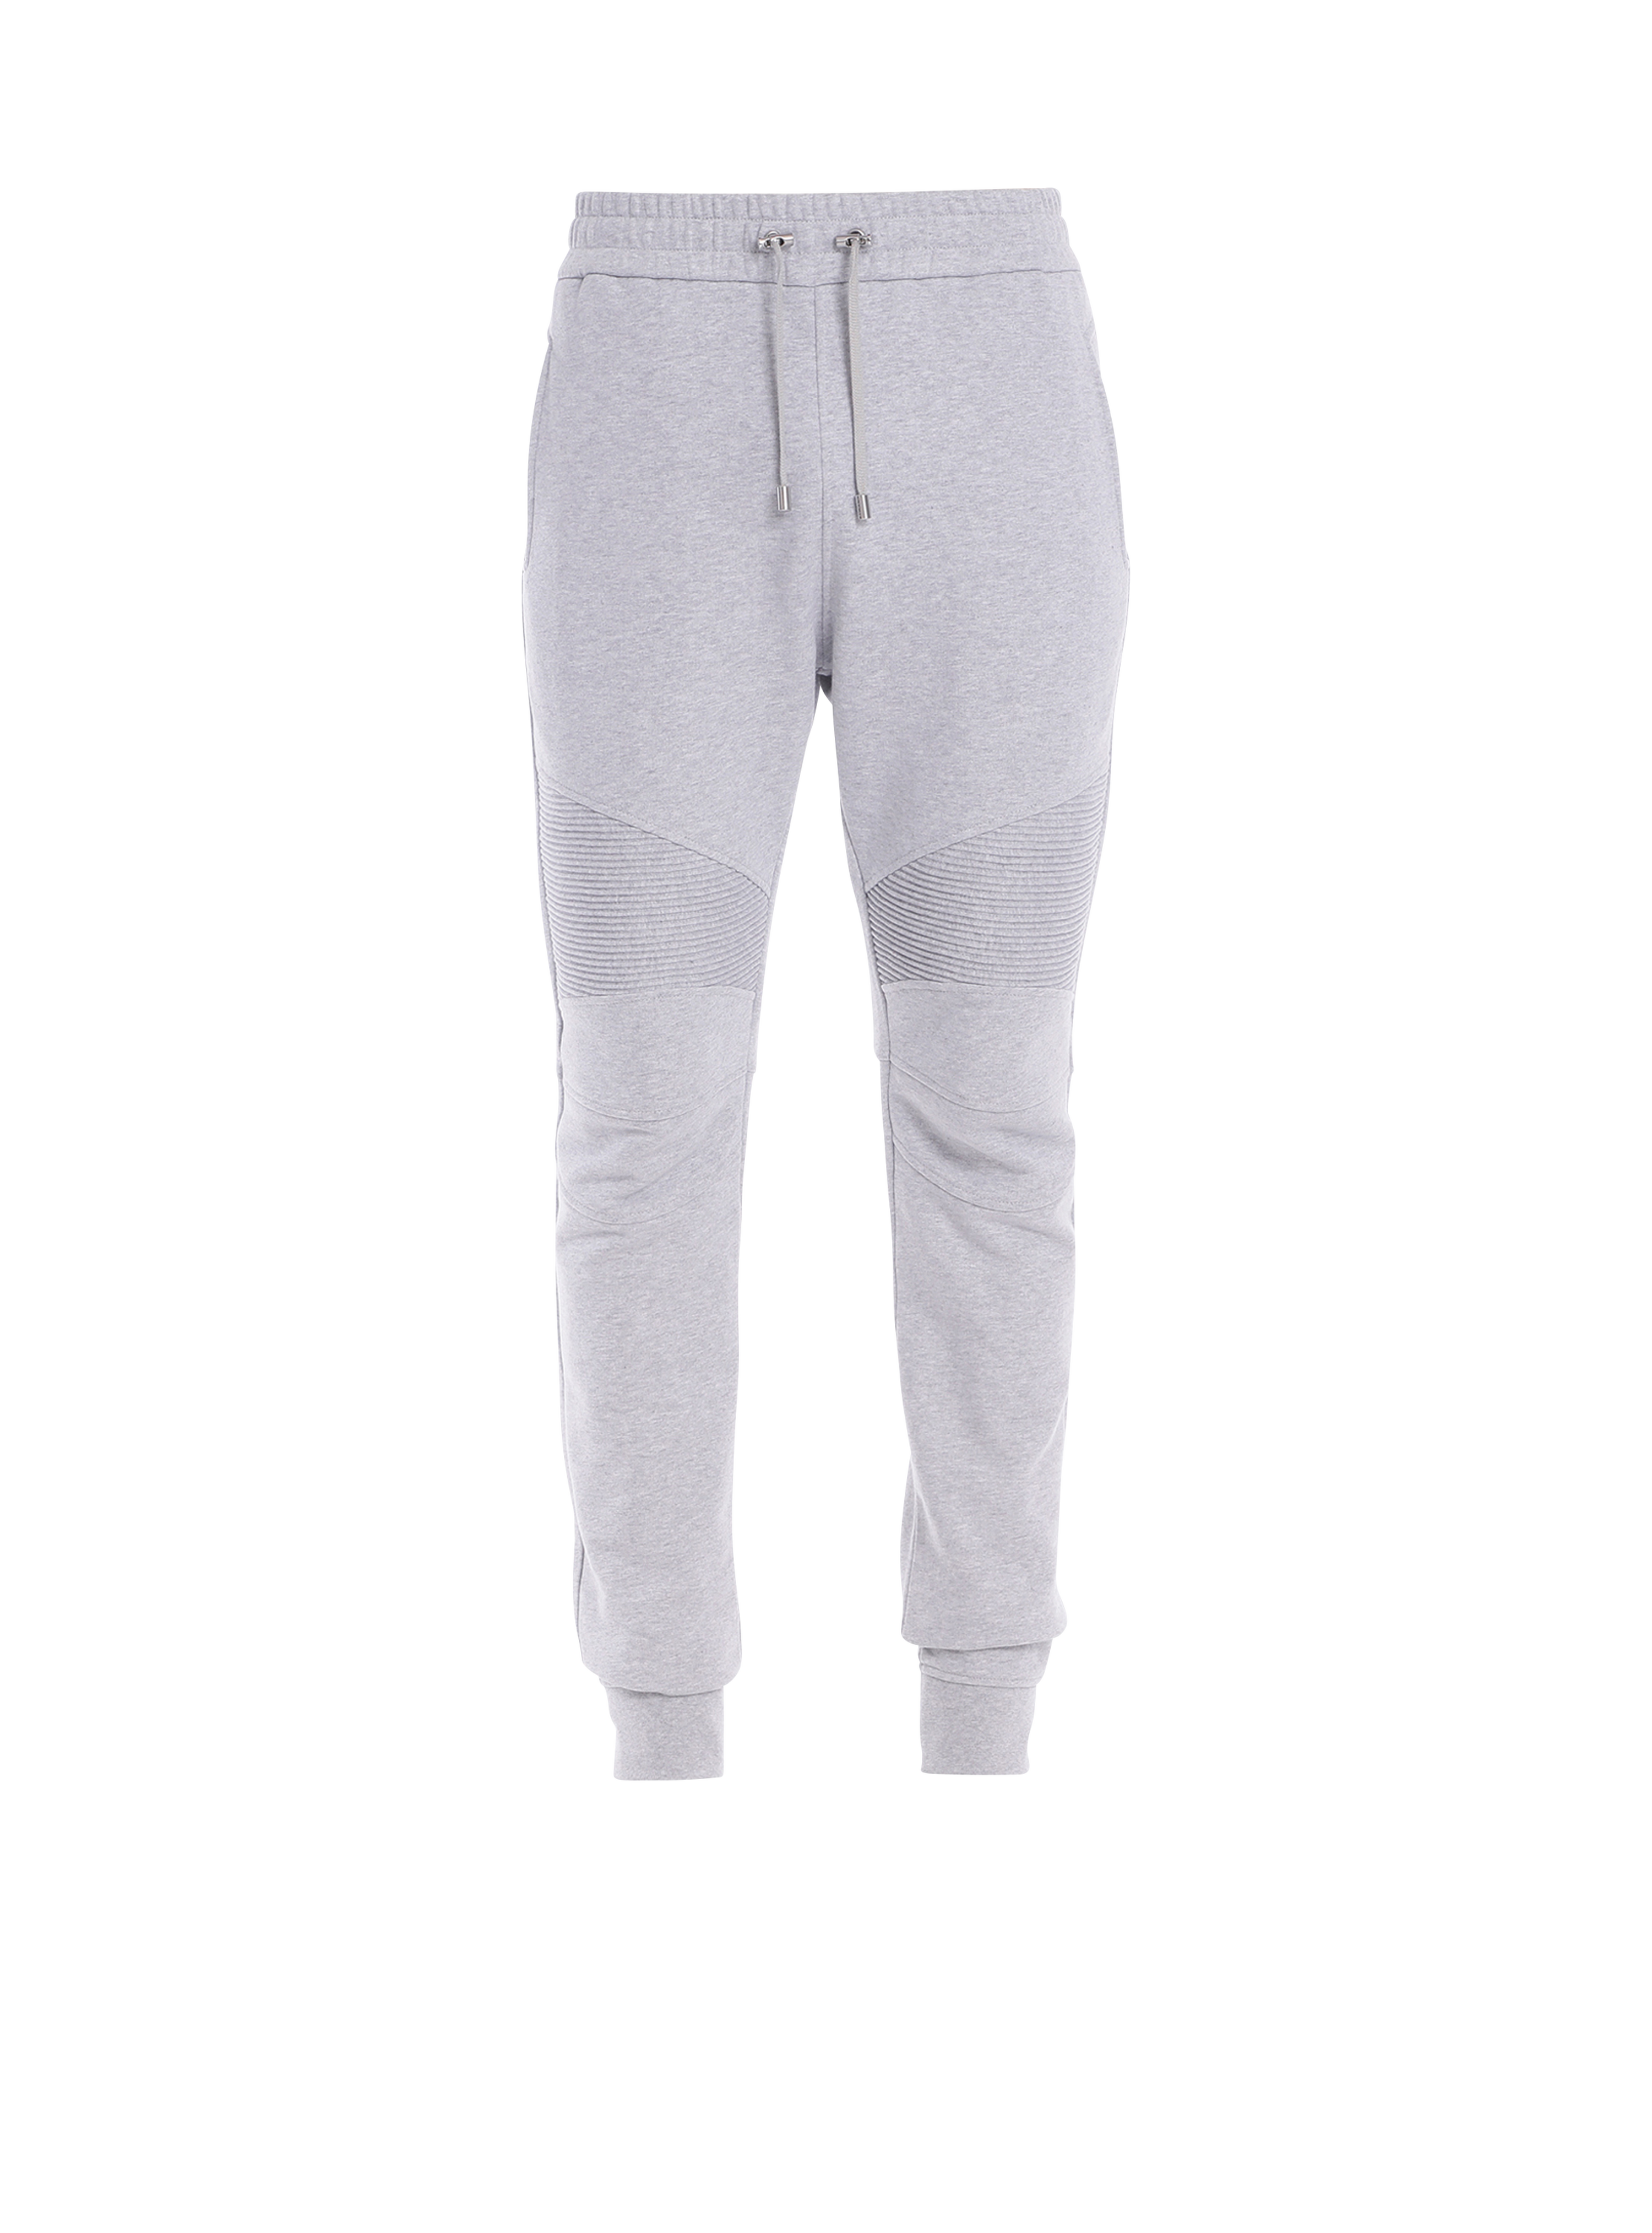 Balmain Paris 徽标装饰棉质运动裤, grey